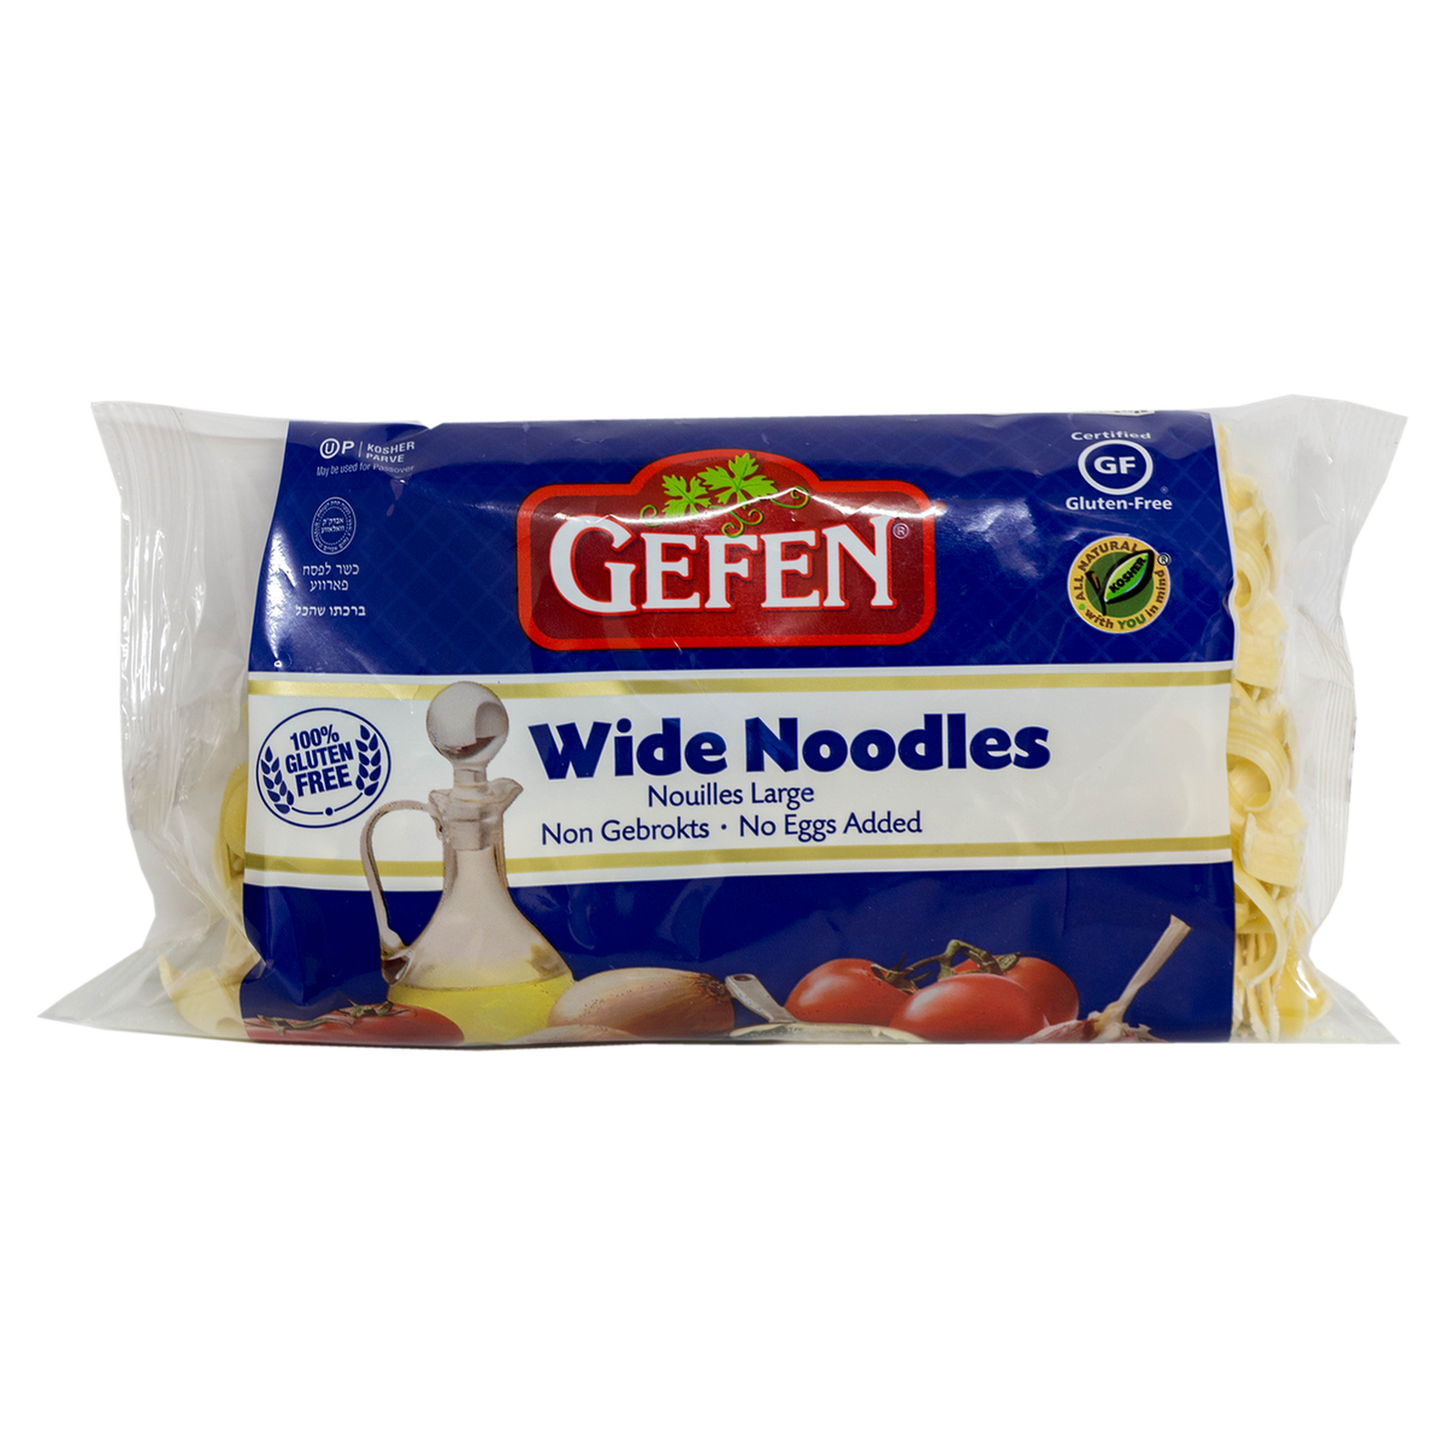 Pasta Gefen: Wide Noodles